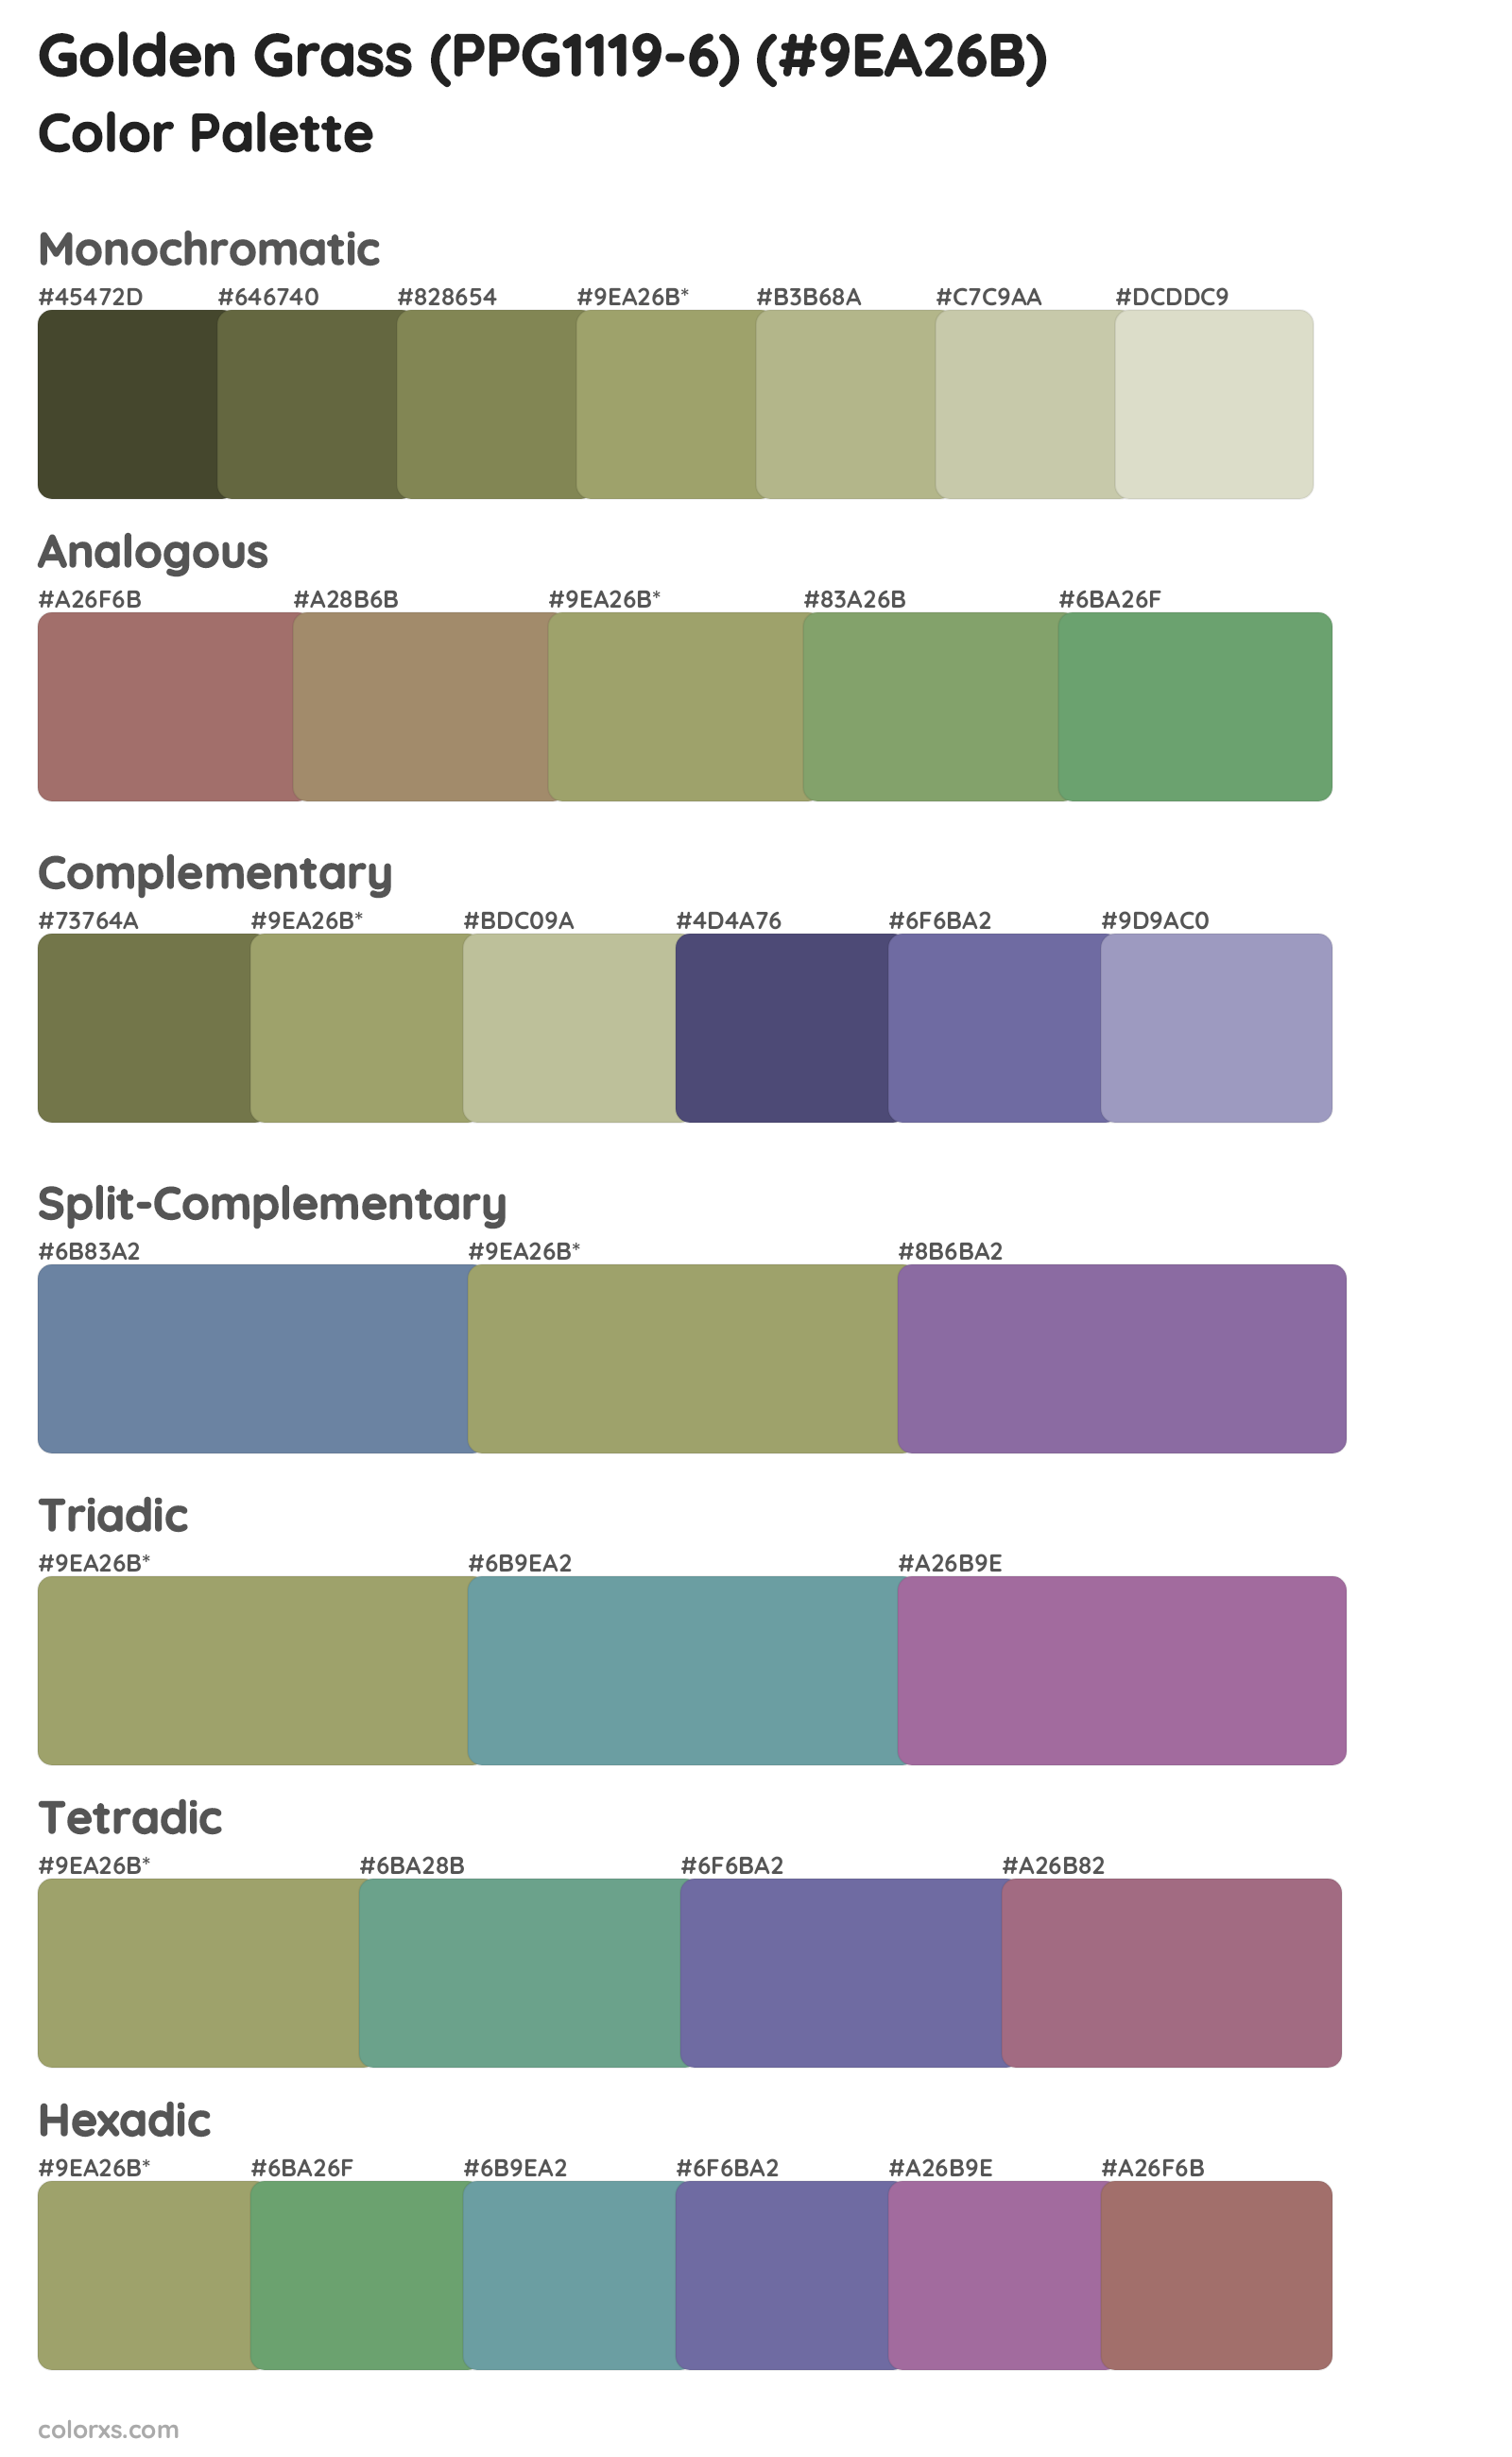 Golden Grass (PPG1119-6) Color Scheme Palettes